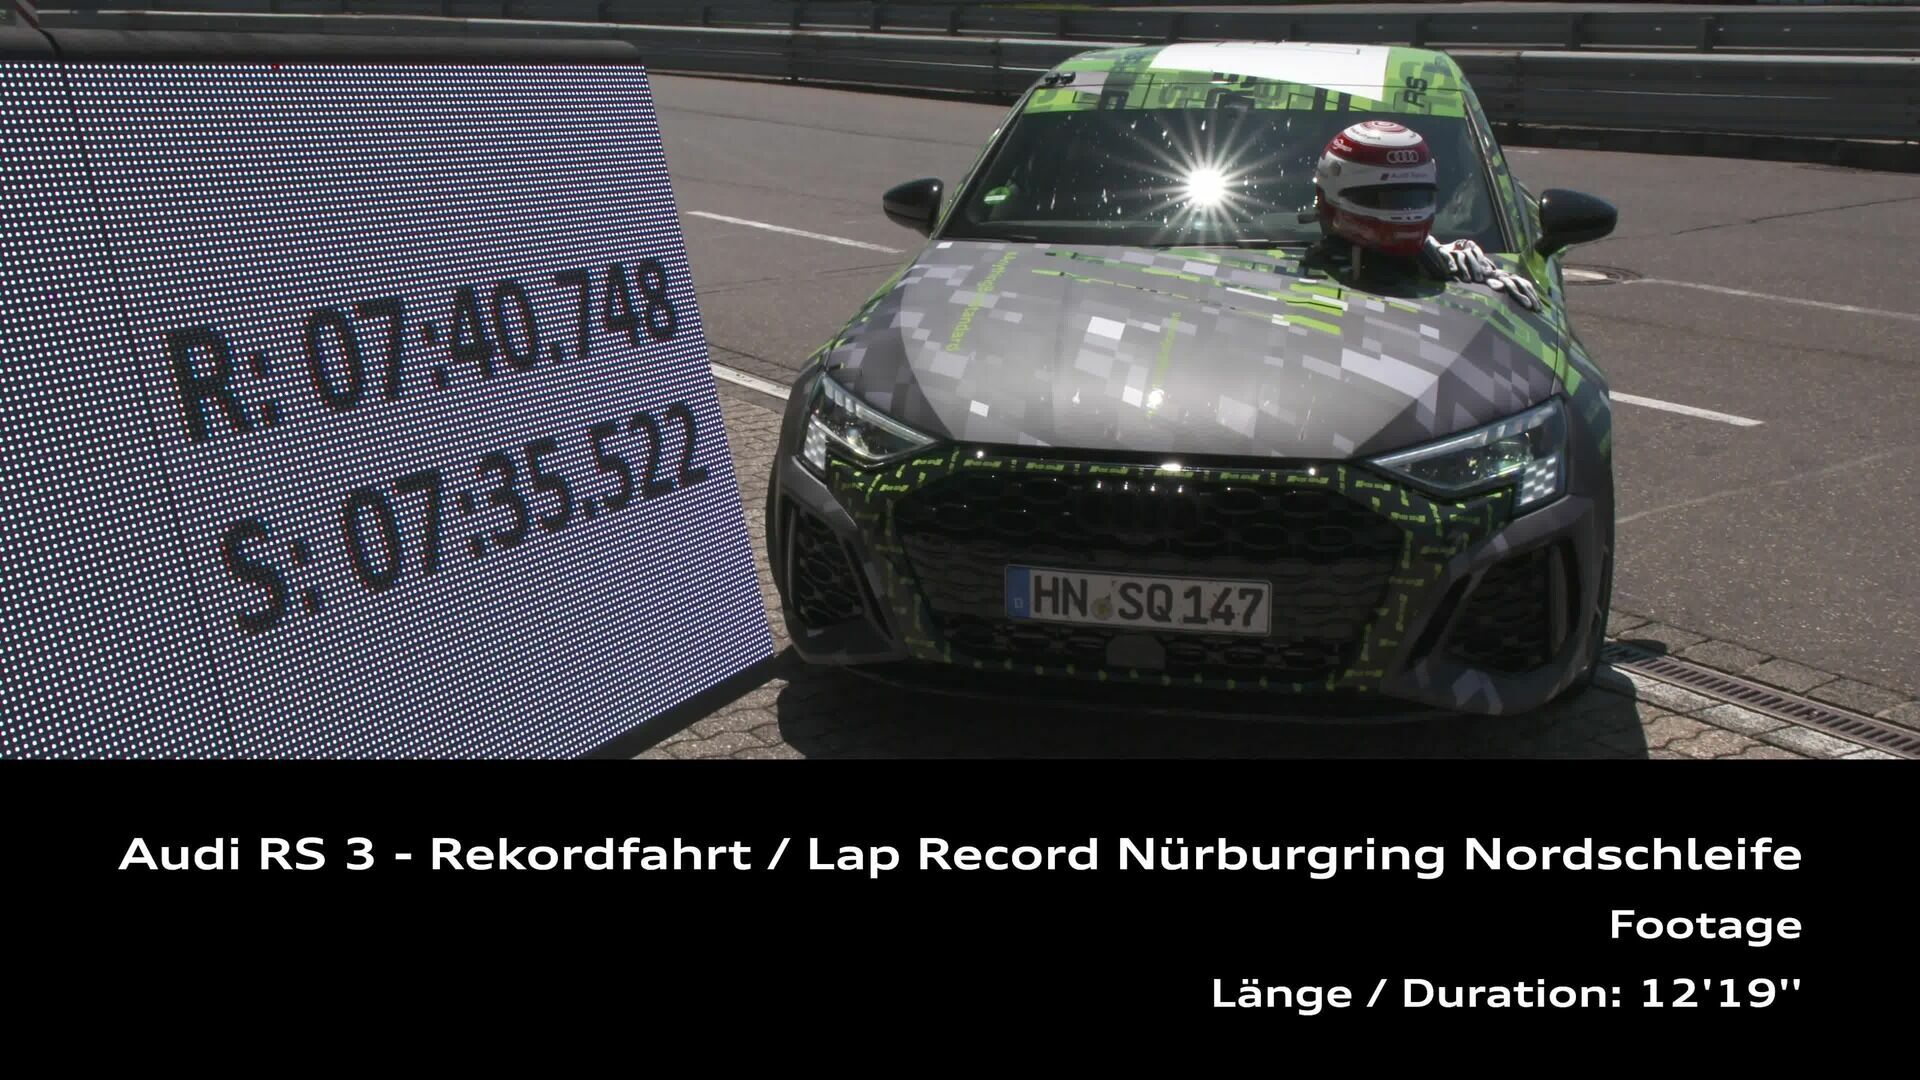 Footage: Audi RS 3 Rundenrekord auf der Nordschleife